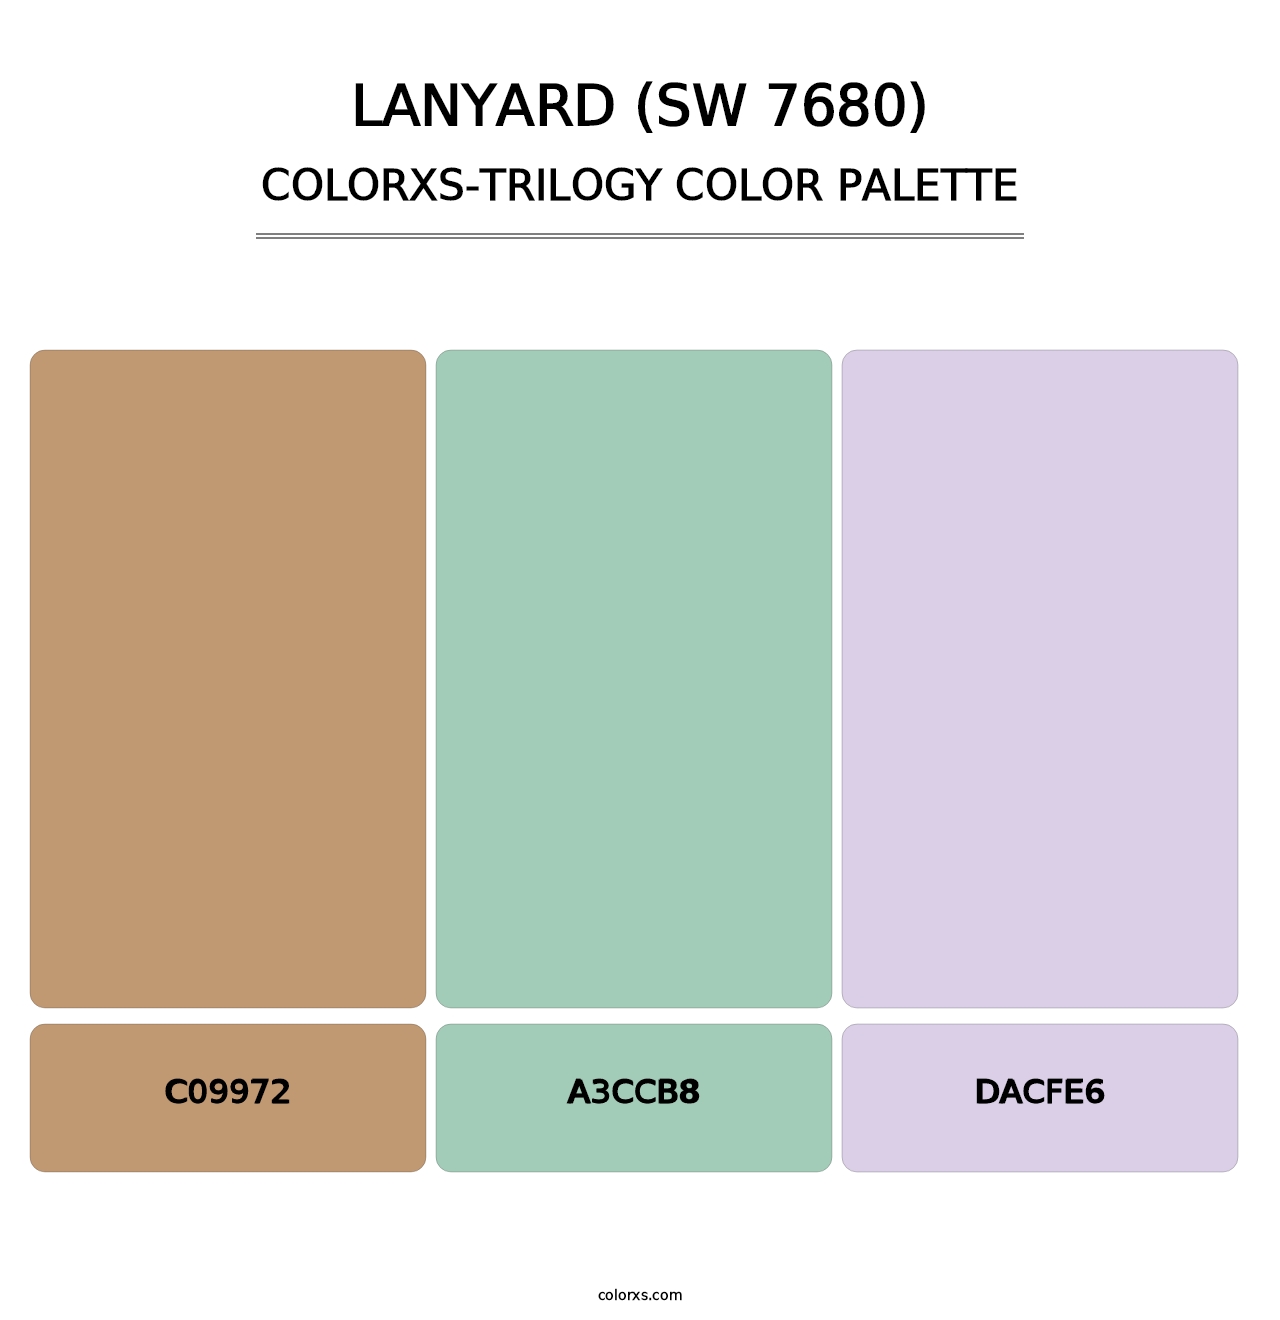 Lanyard (SW 7680) - Colorxs Trilogy Palette